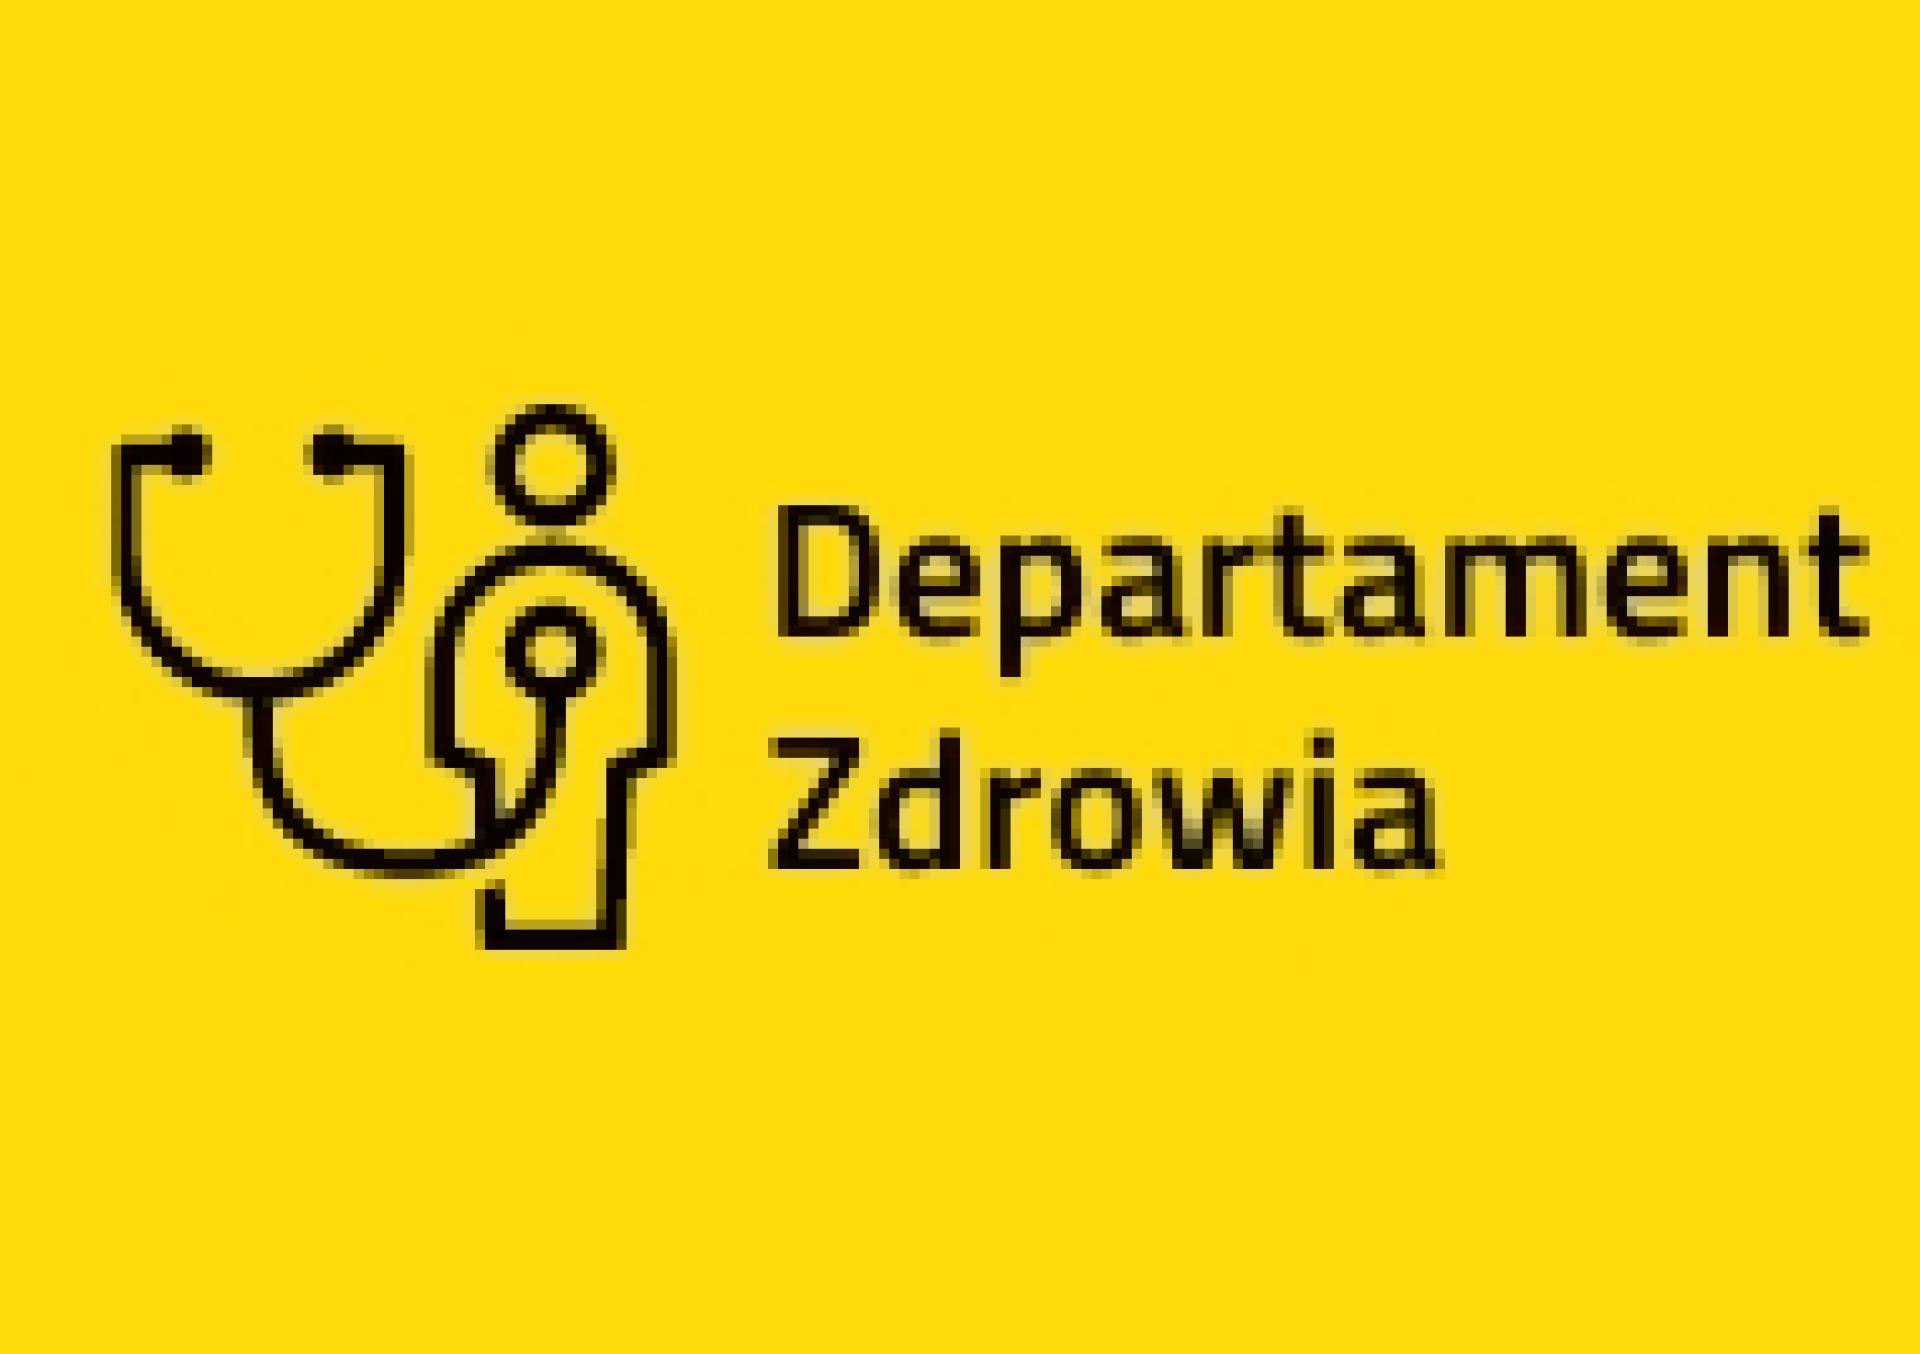 Konsultacje projektu uchwały Sejmiku w sprawie zmiany nazwy Wojewódzkiego Szpitala Zespolonego w Lesznie - zobacz więcej